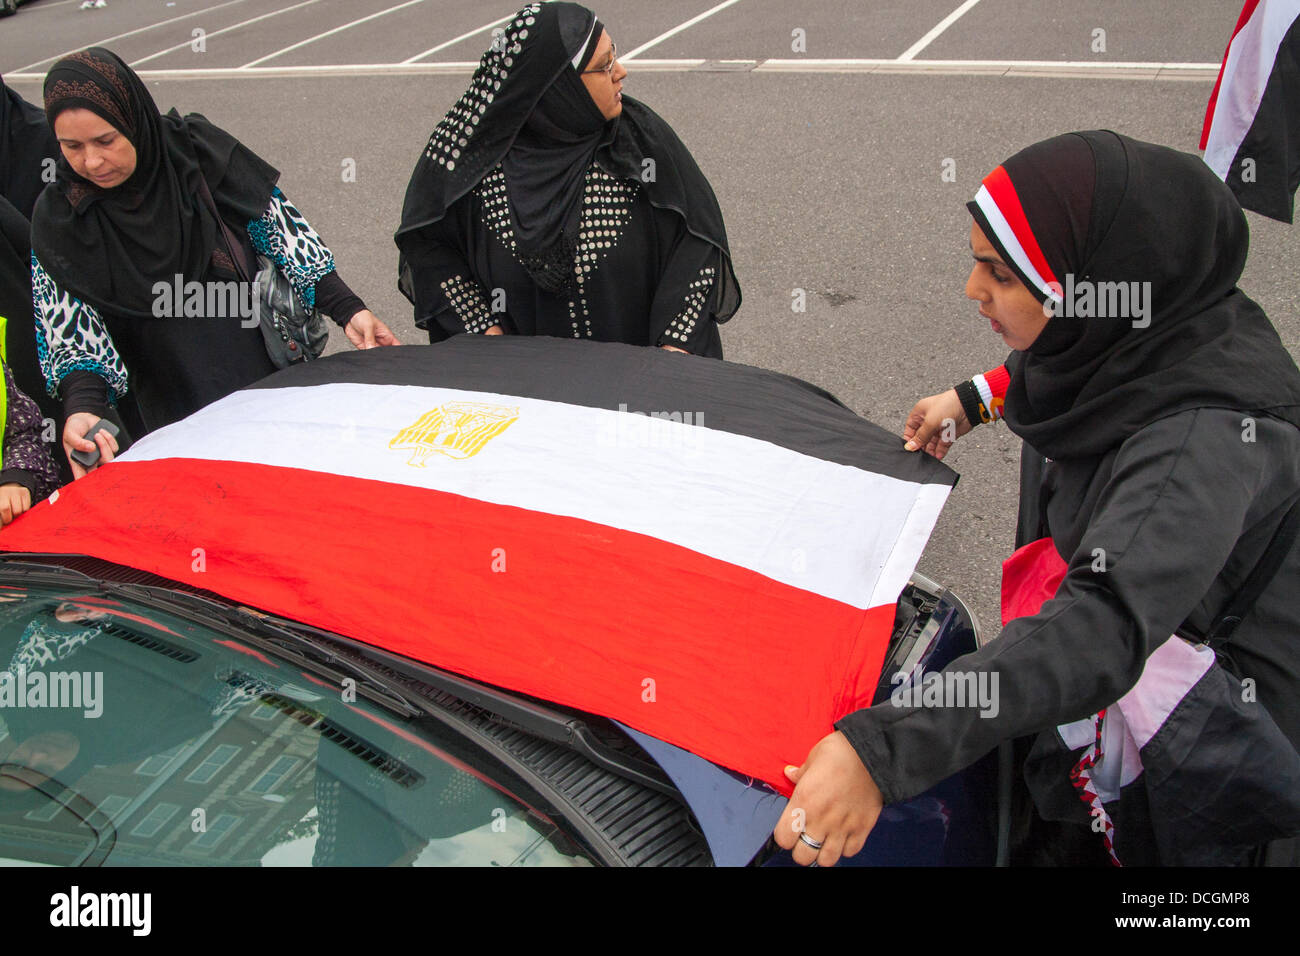 London, UK. 17. August 2013.  Frauen binden eine Flagge auf der Vorderseite eines Autos als über 100 britischen Ägypter vorbeifahren Protest auf den Straßen von London gegen den Militärputsch und anschließende Gewalt in Ägypten Credit halten: Paul Davey/Alamy Live News Stockfoto